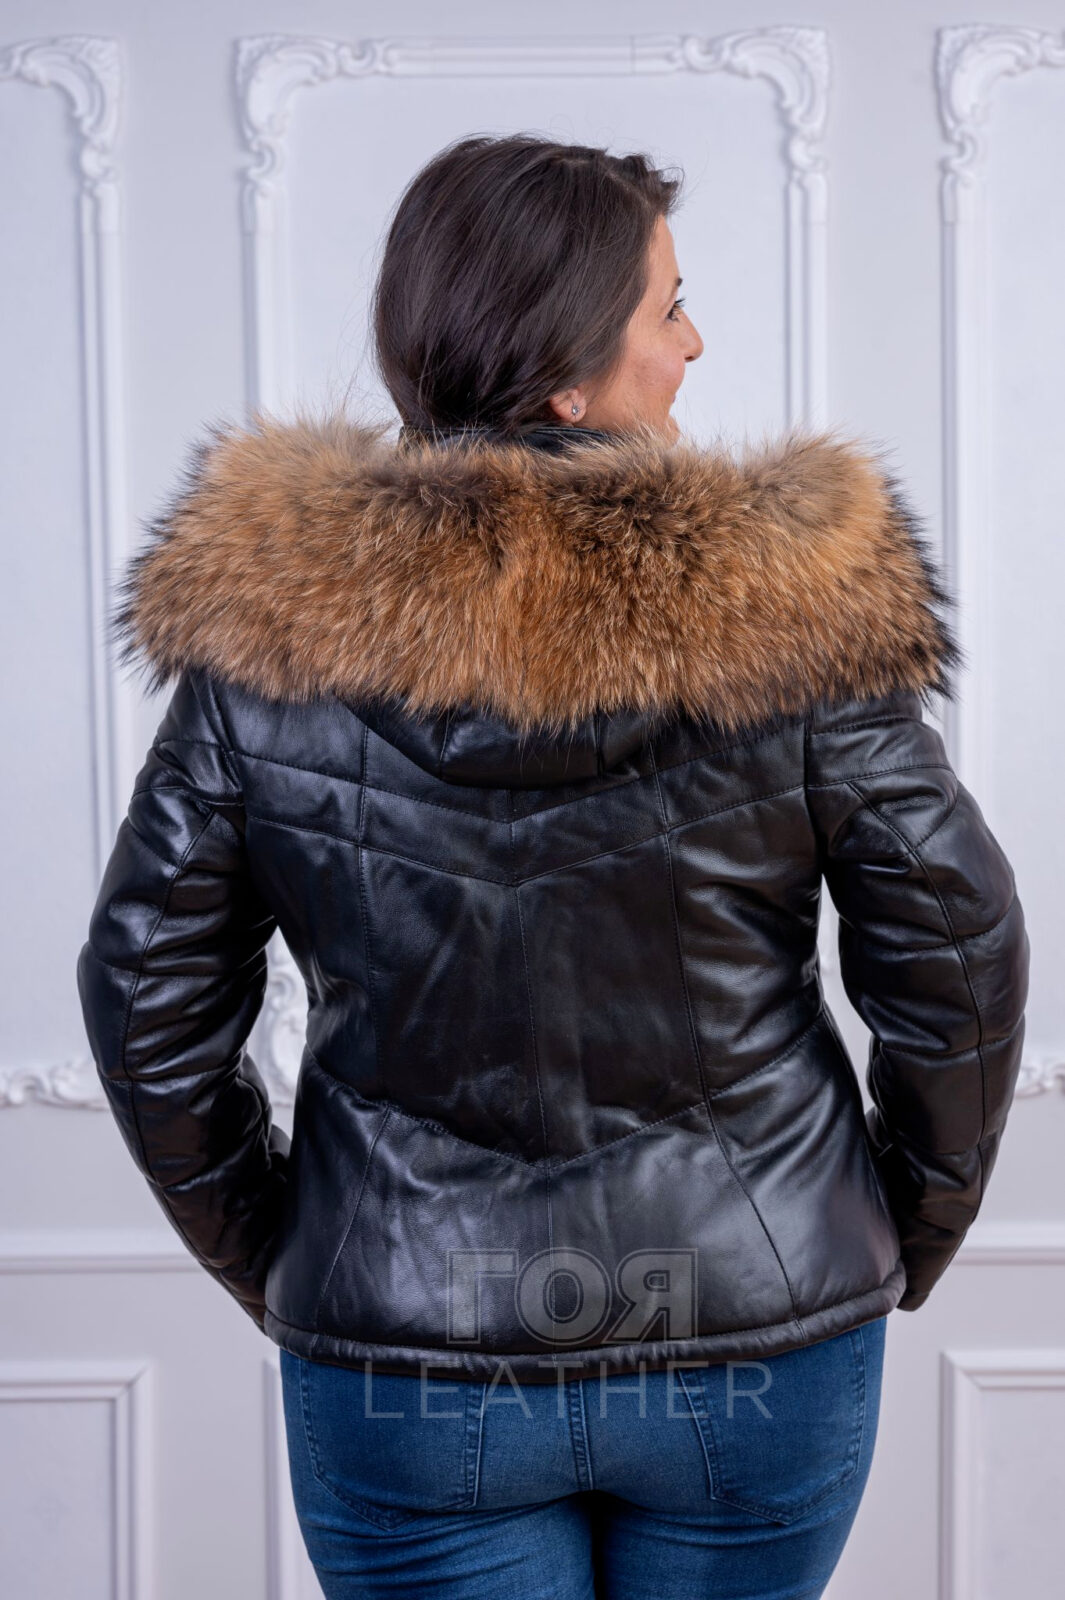 Зимно яке с качулка енот от ГОЯ Leather. Модел изработен от 100% естетвена агнешка напа. Подвижна качулка с богата гарнитура от енот. Лека, топла и комфортна дреха за студените зимни дни.